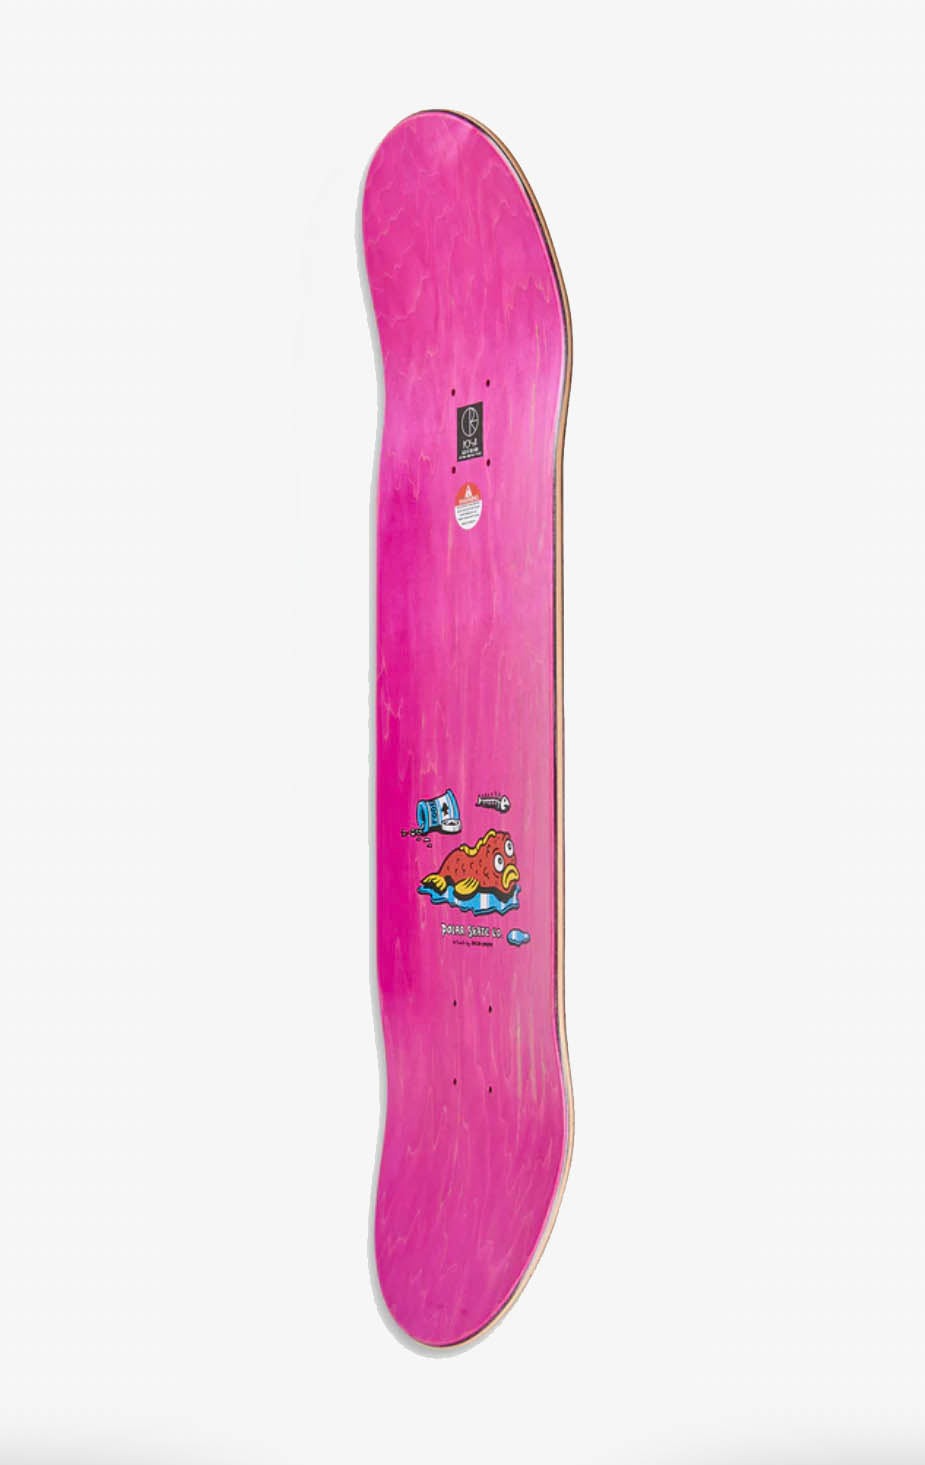 Polar Skate Co Dane Brady Fish Bowl Skateboard Deck, Pink